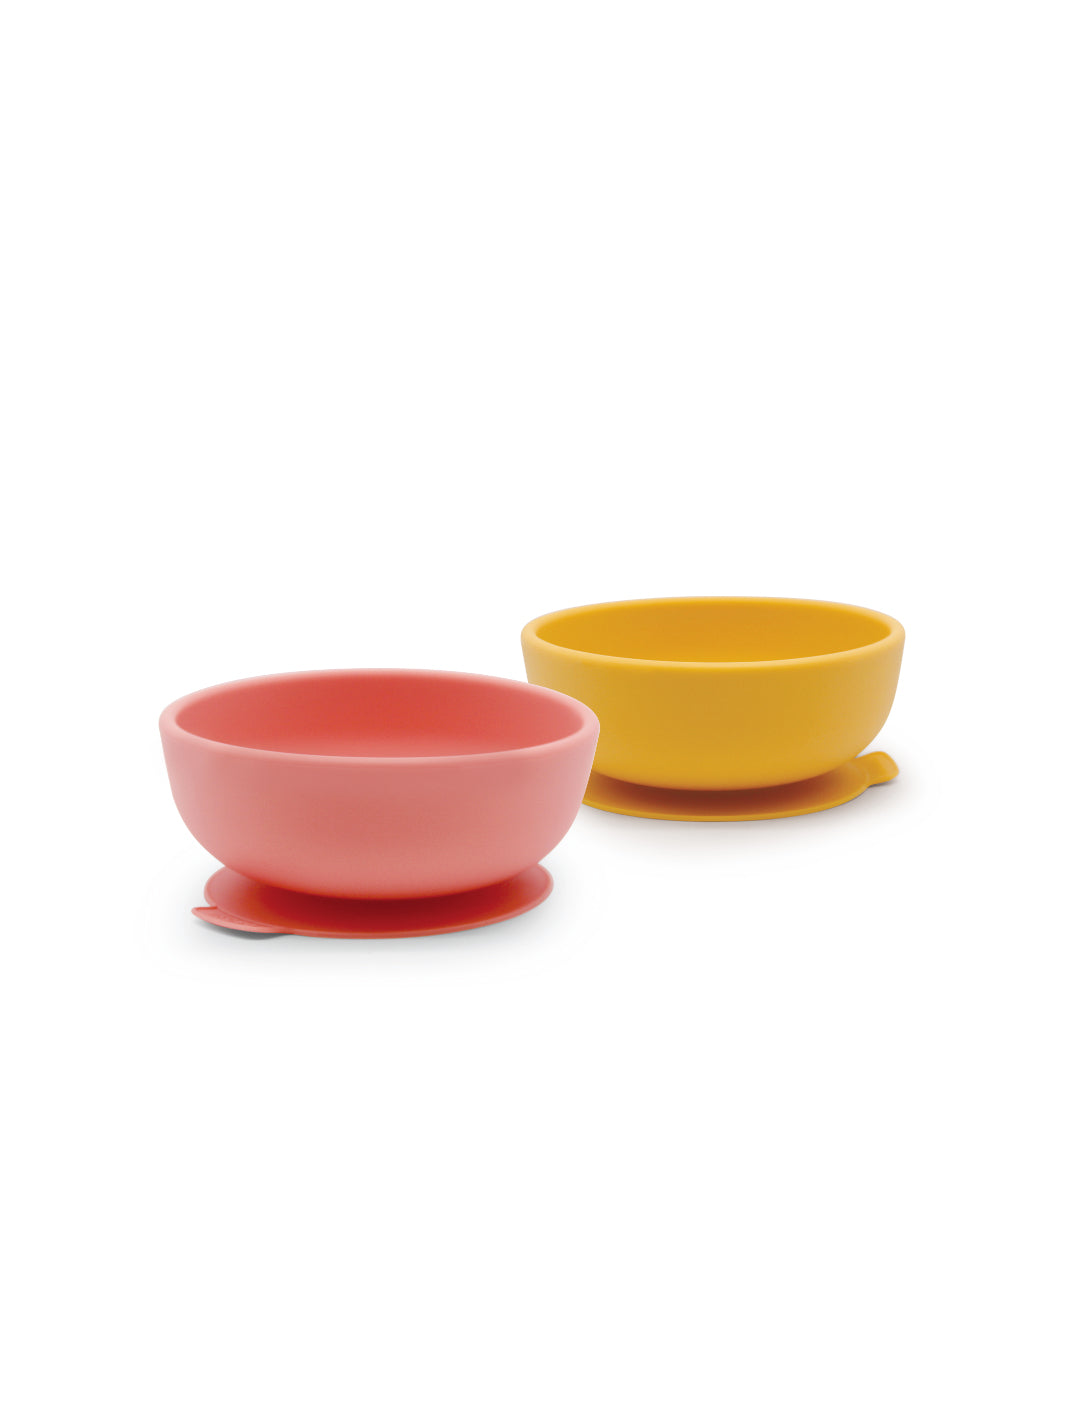 EKOBO Bambino Silicone Suction Bowl Set (2 bowls)